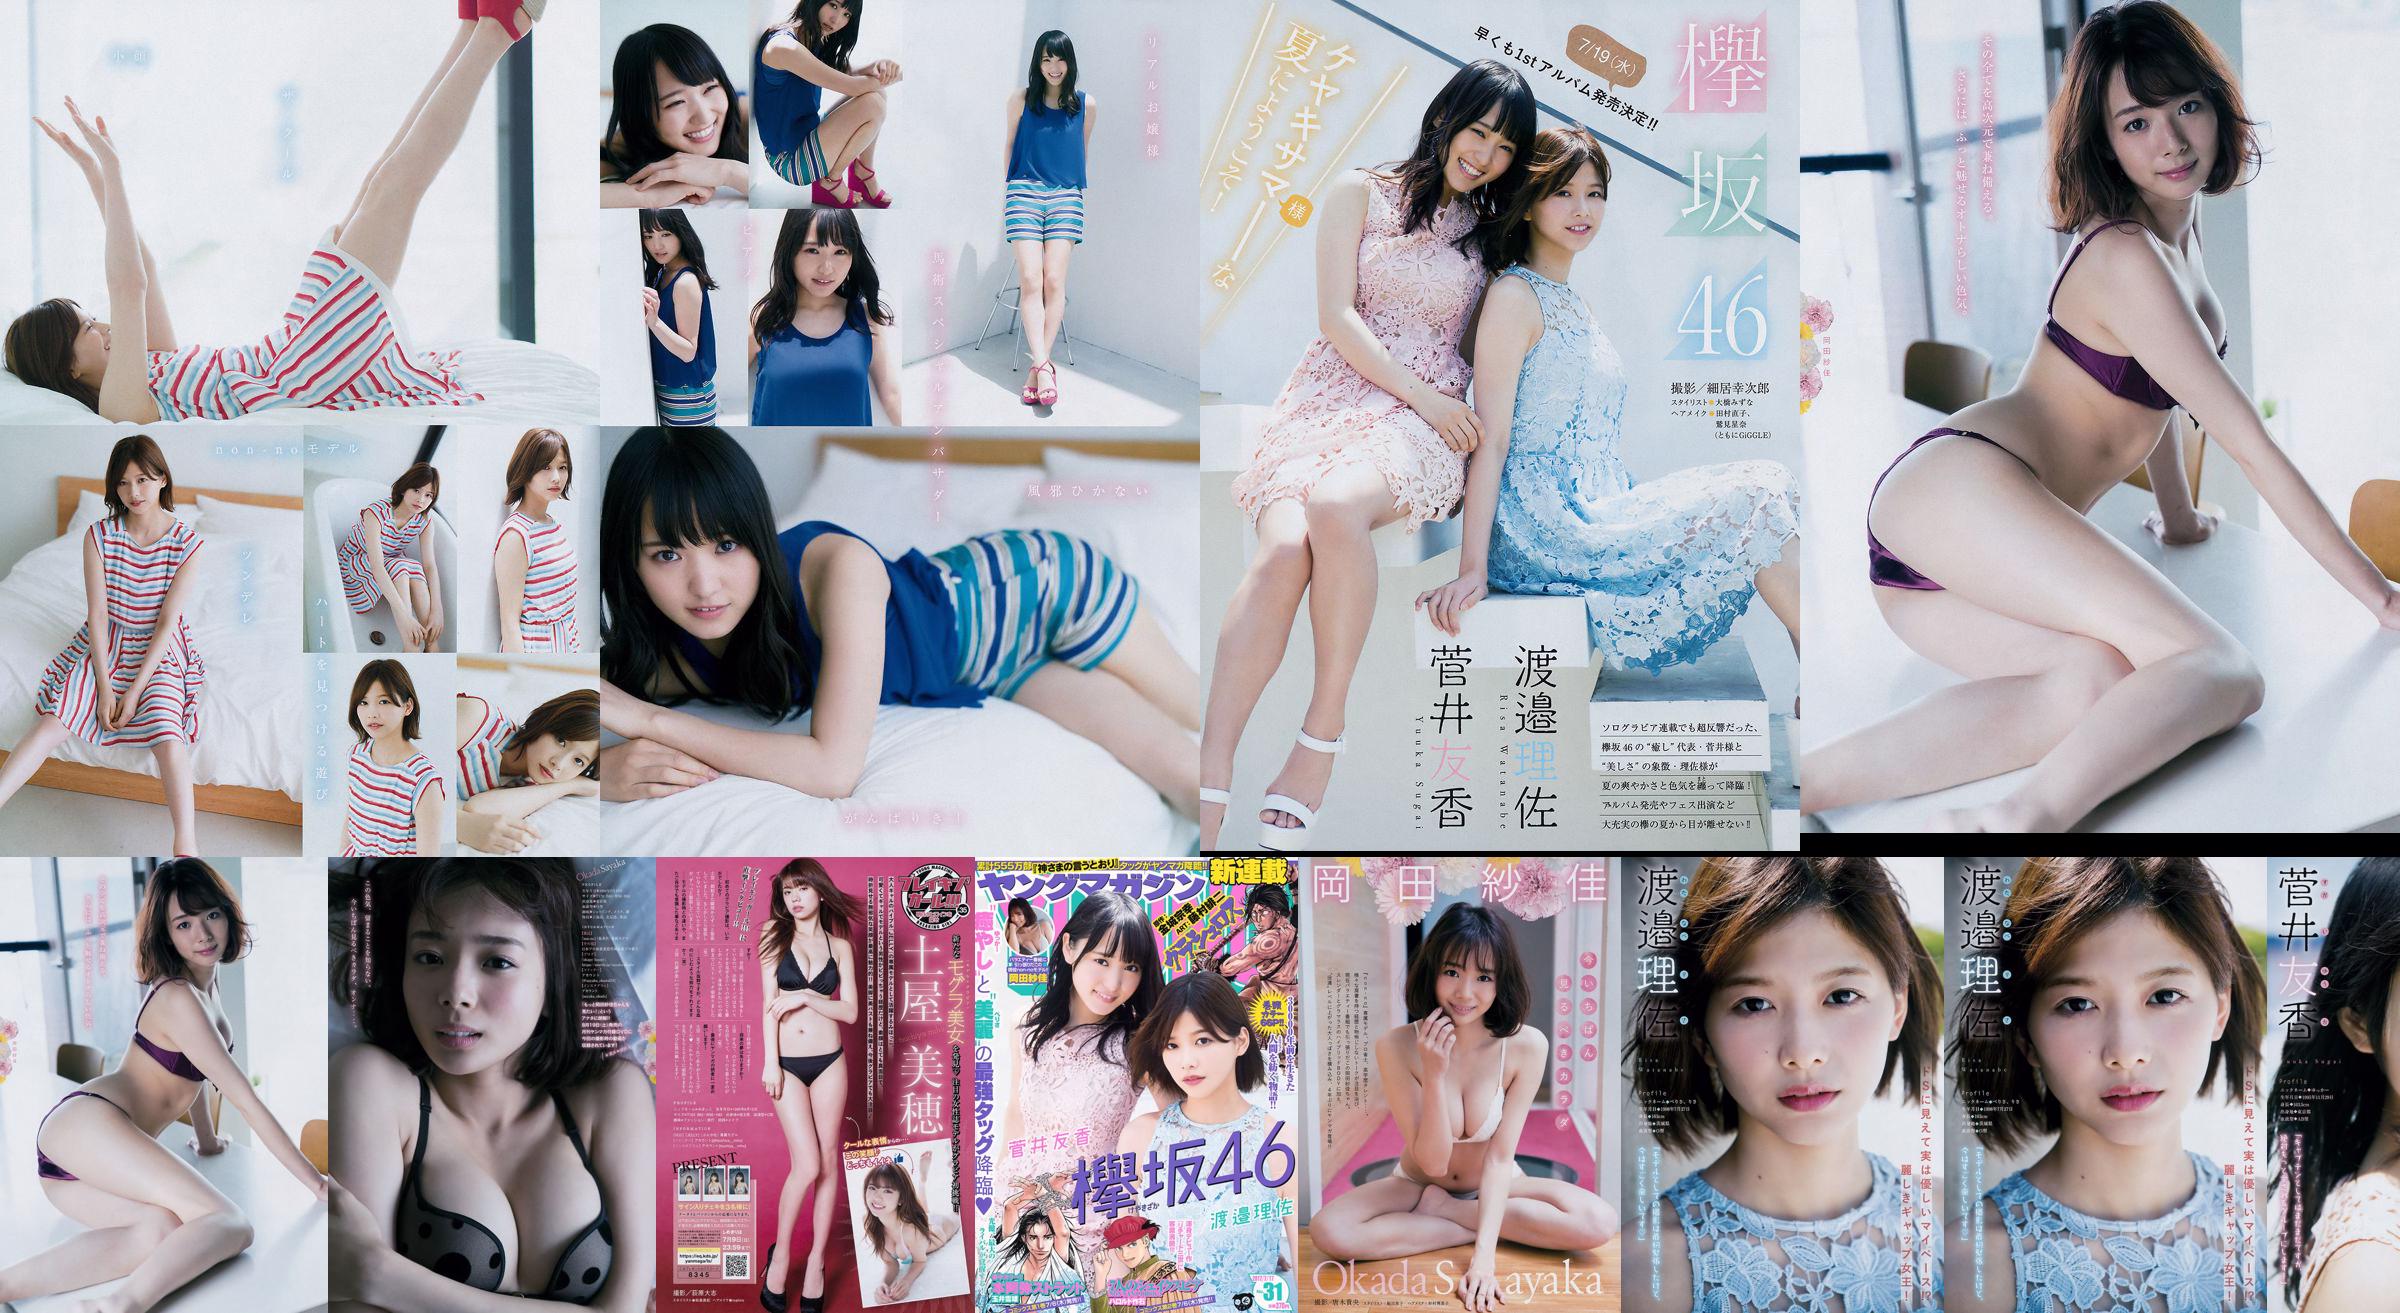 [Young Magazine] Watanabe Risa, Sugai Yuka, Okada Saika 2017 No.31 Photo Magazine No.8df318 Pagina 6